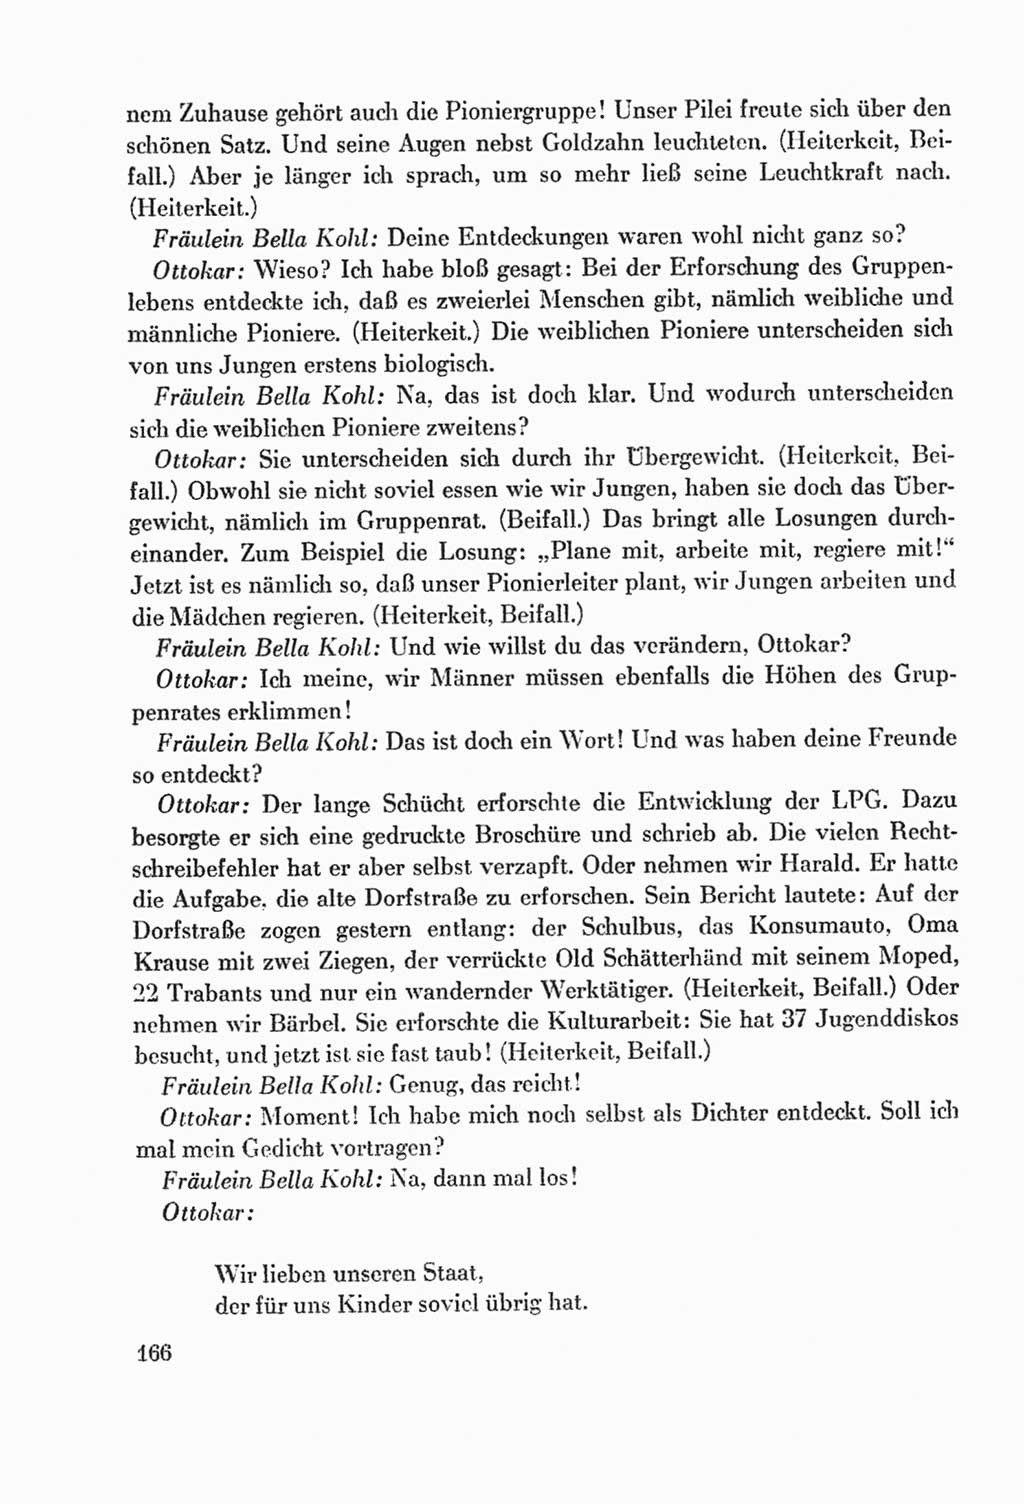 Protokoll der Verhandlungen des Ⅸ. Parteitages der Sozialistischen Einheitspartei Deutschlands (SED) [Deutsche Demokratische Republik (DDR)] 1976, Band 2, Seite 166 (Prot. Verh. Ⅸ. PT SED DDR 1976, Bd. 2, S. 166)